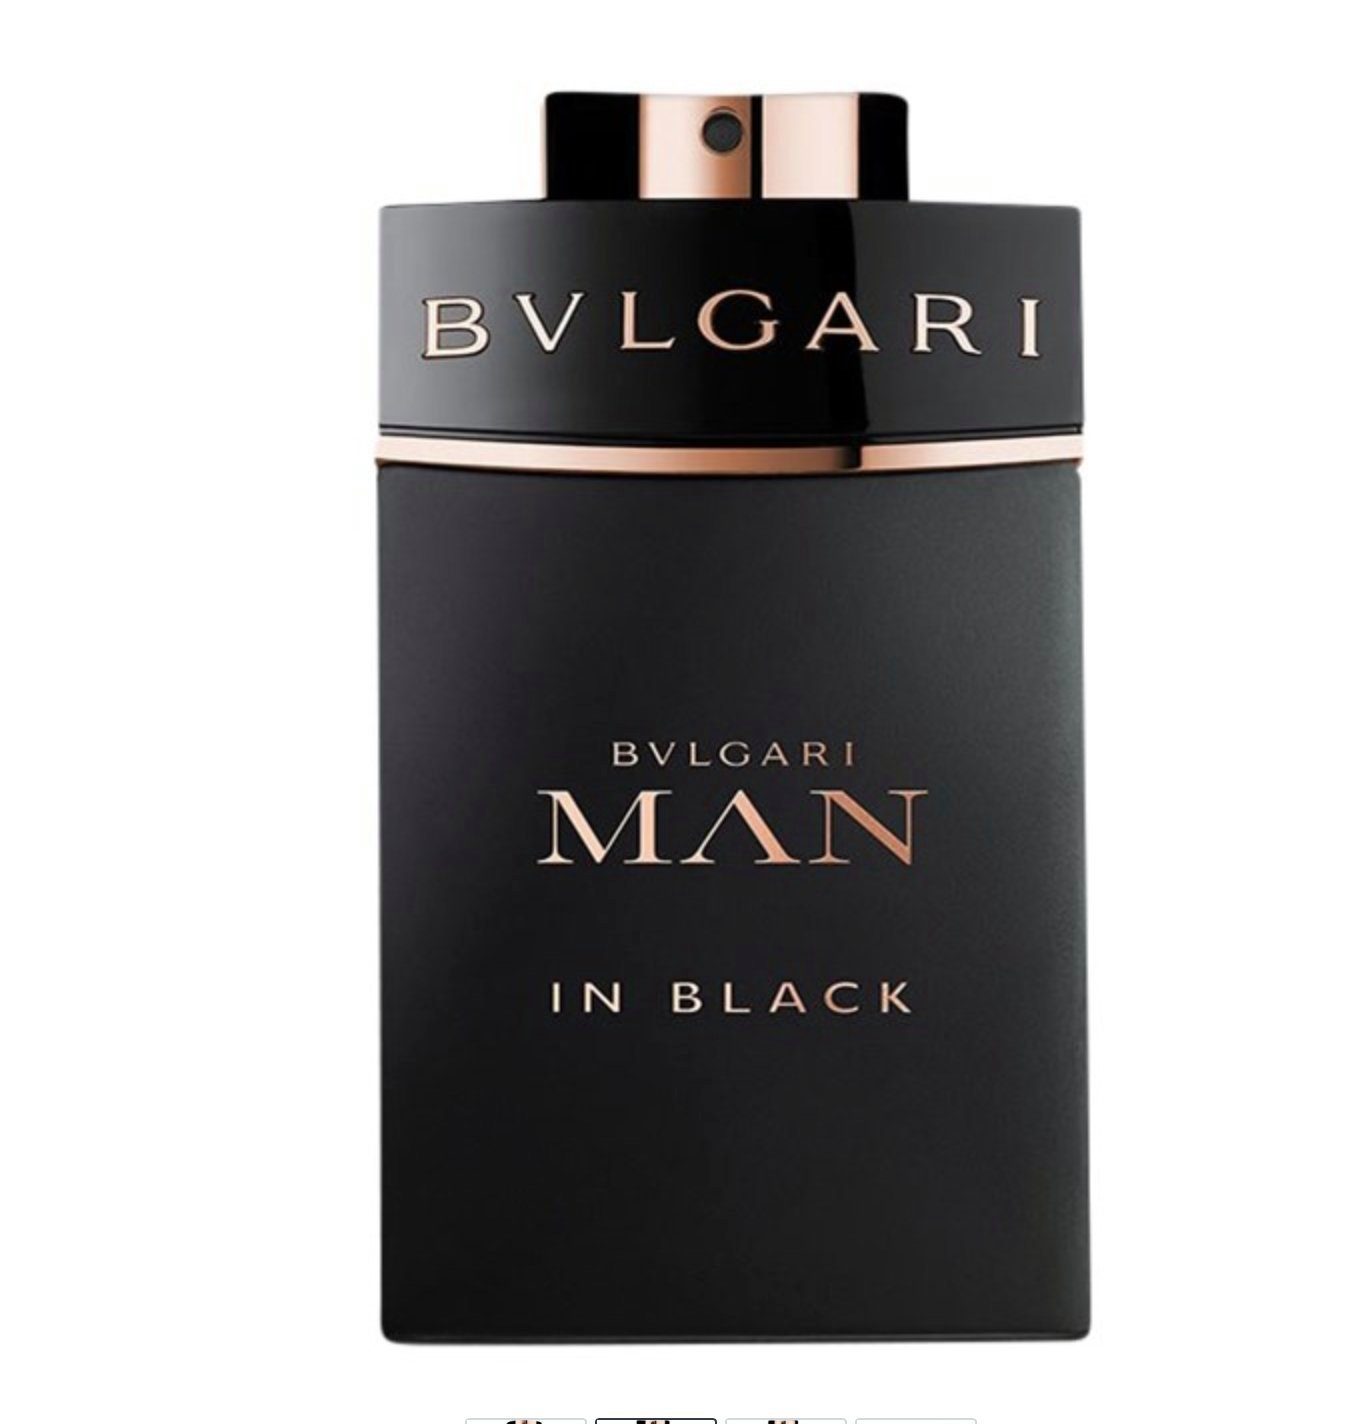 de Bvlgari Man Parfum Toilette BVLGARI Black Eau EDT de Cologne Eau